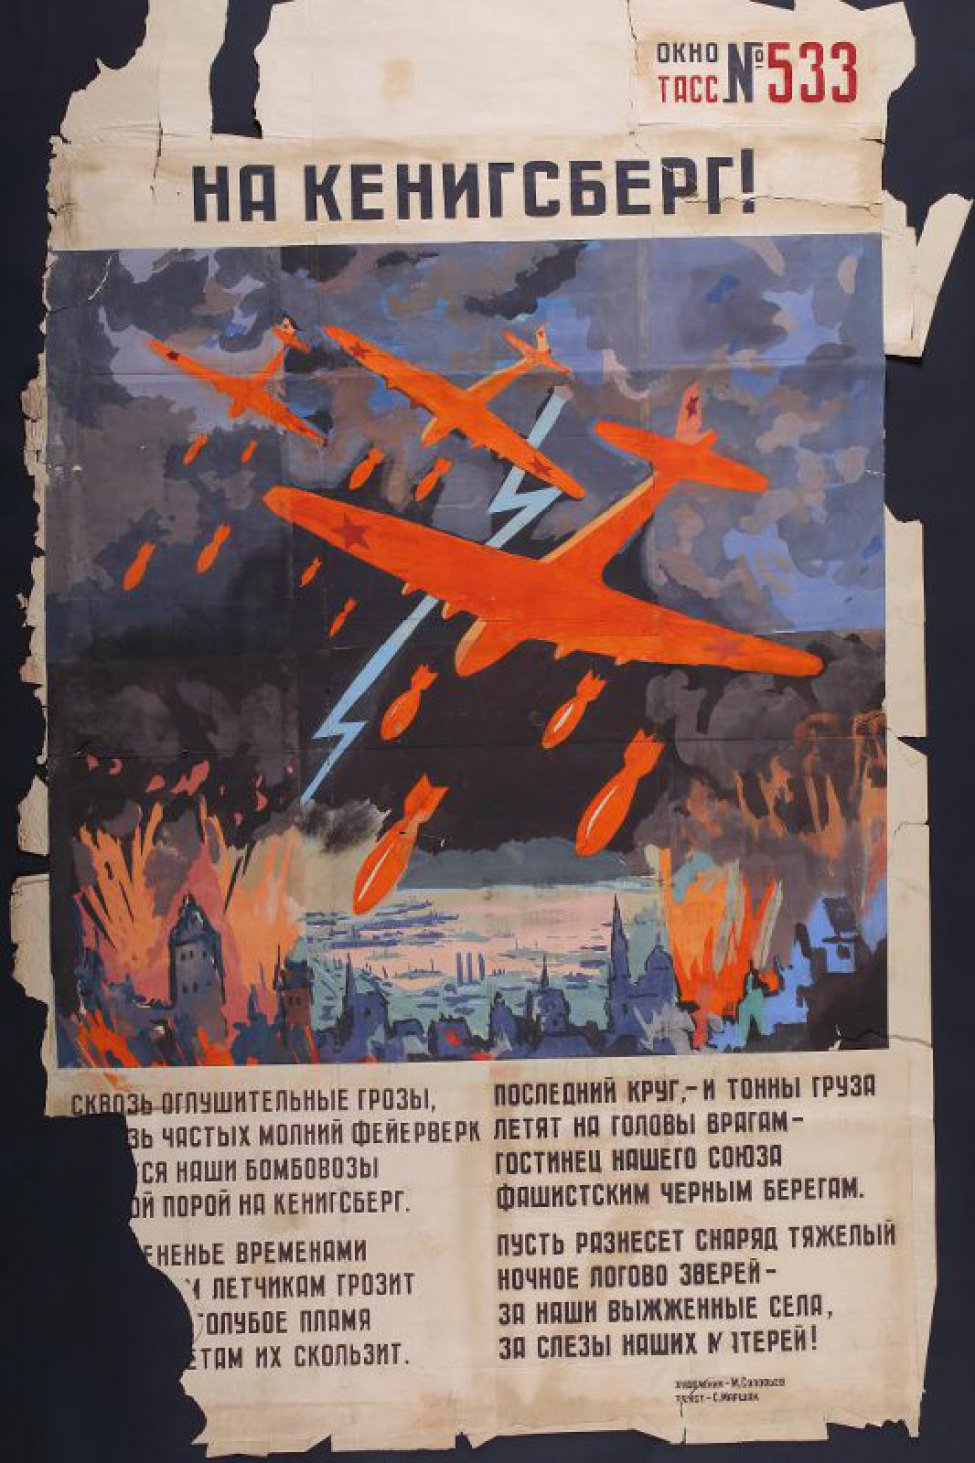 Изображен немецкий портовый город ночью, его бомбят советские самолеты,текст: " Сквозь оглушительные грозы, сквозь частых молний фейерверк, несутся наши бомбовозы ночной порой на Кенинсберг..."